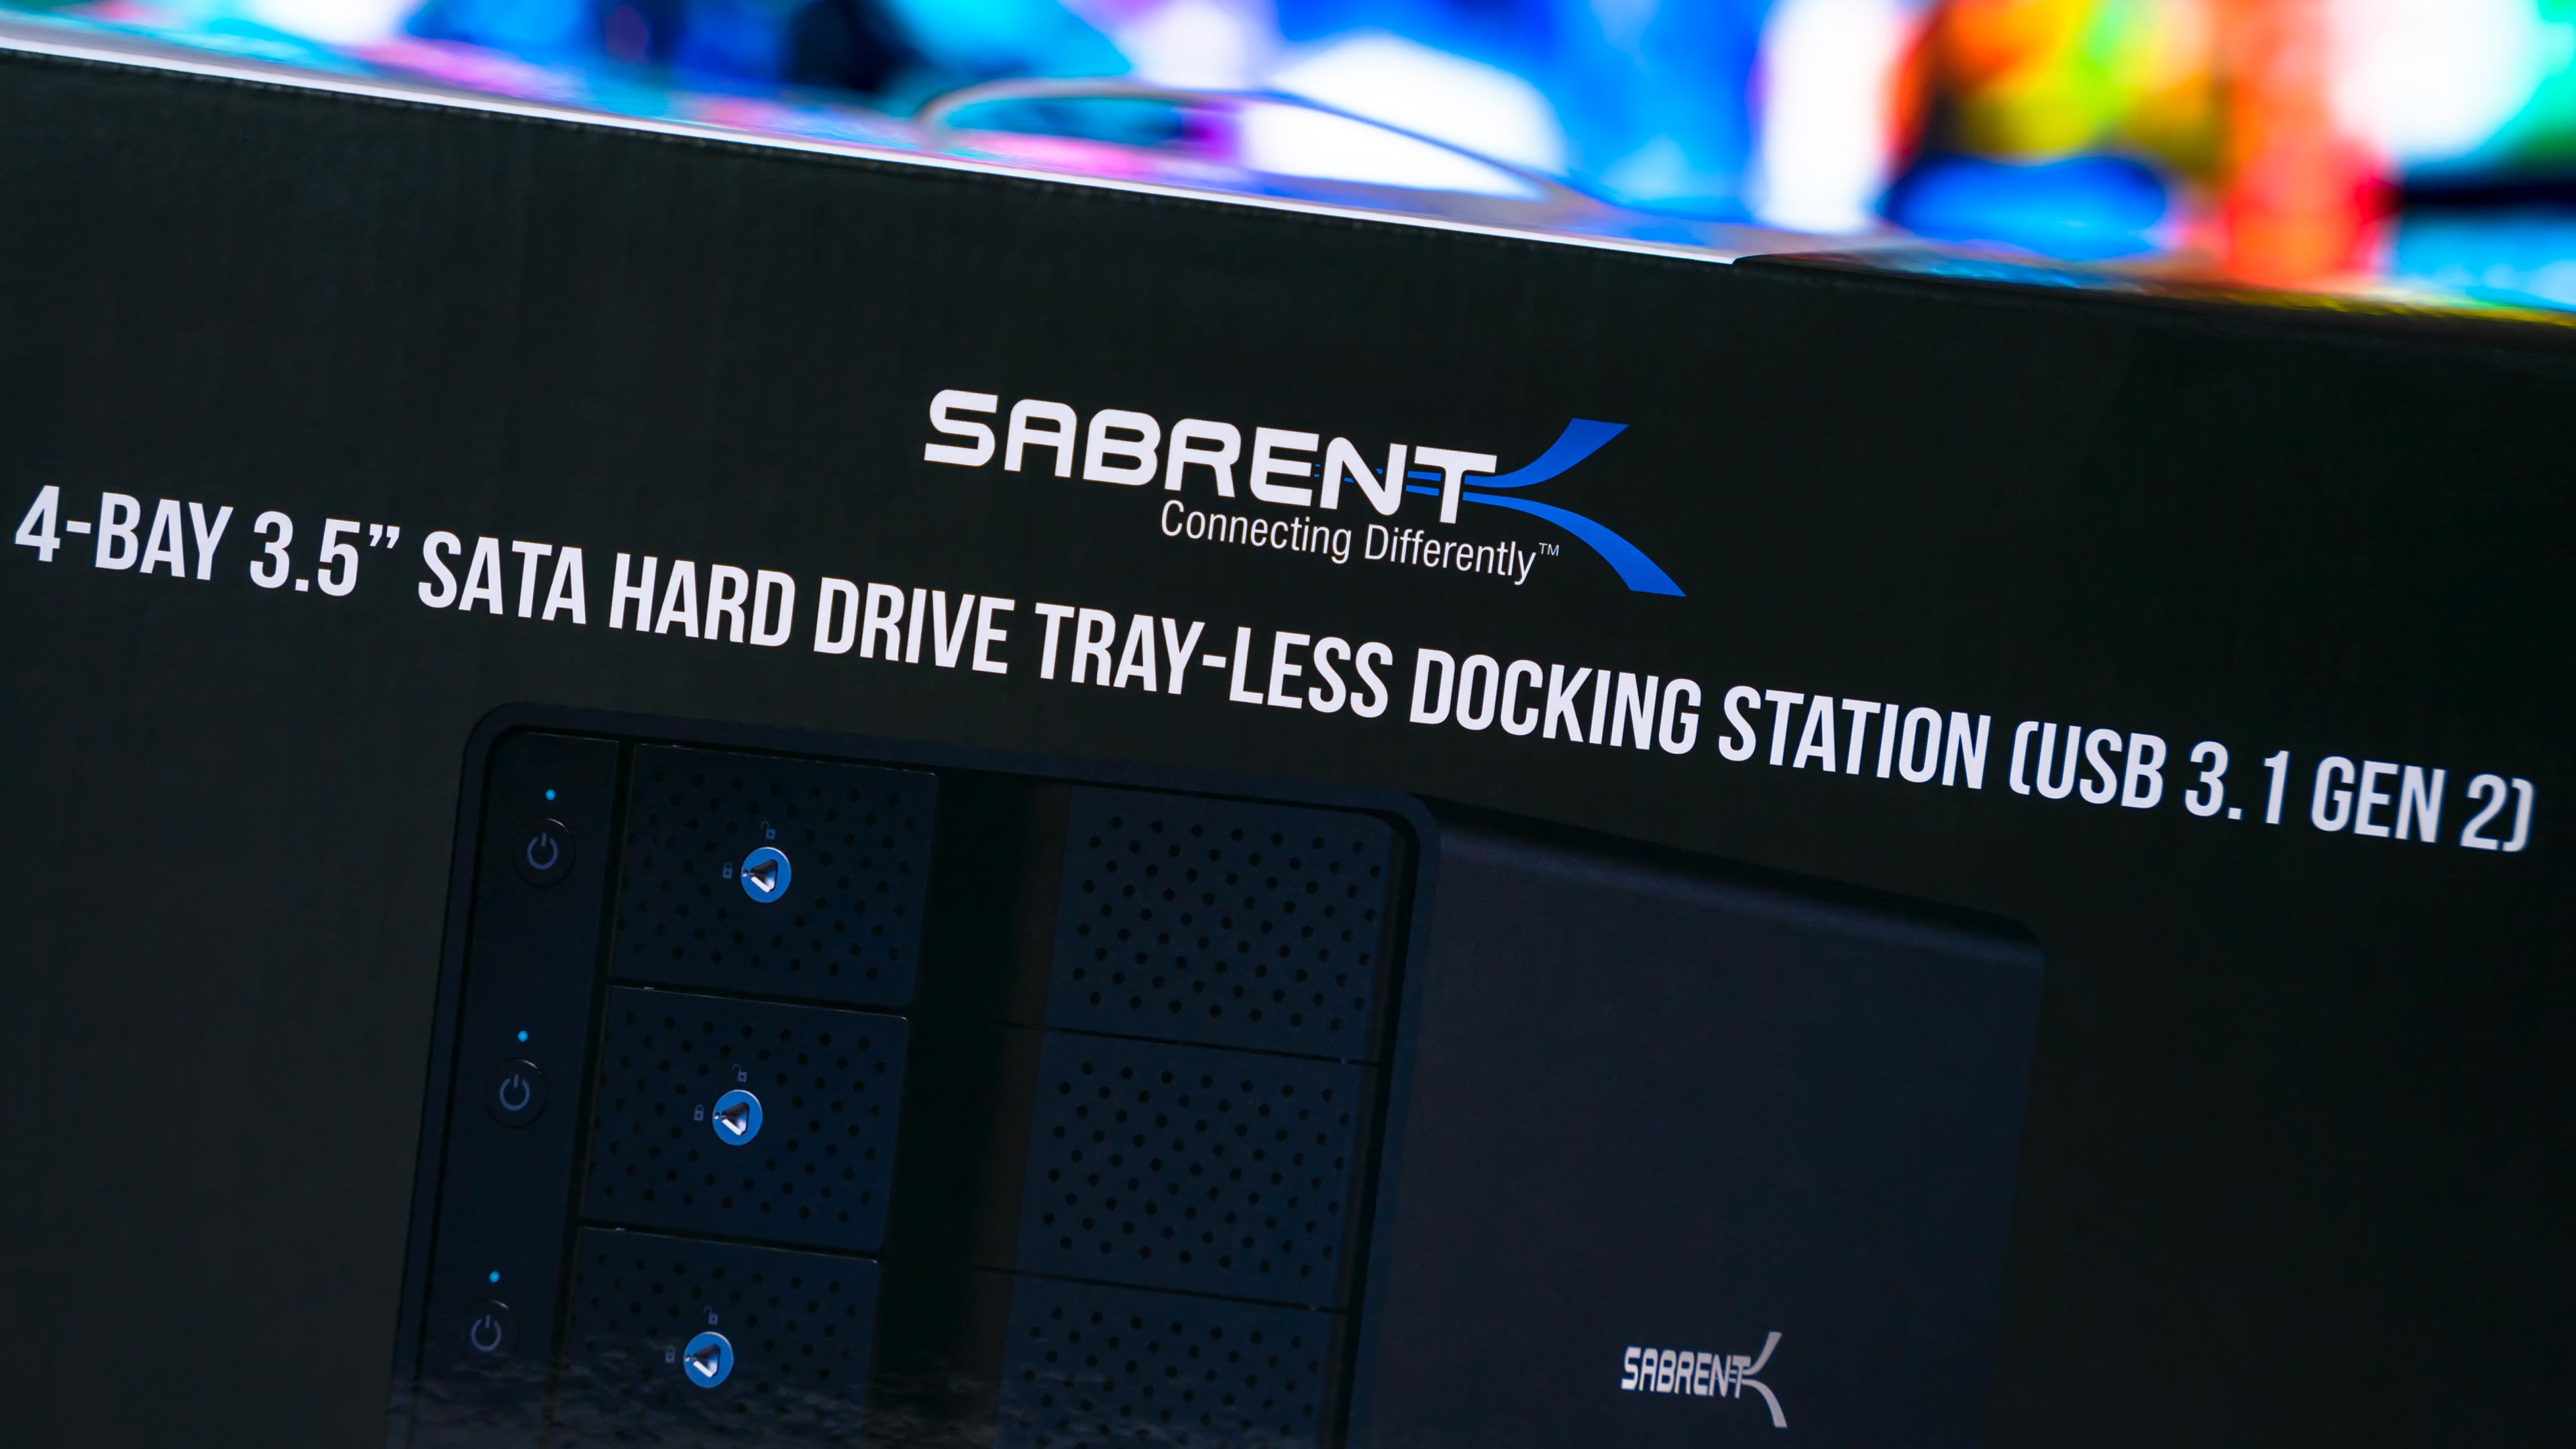 Sabrent 4Bay SATA HDD Docking Station Box (2)